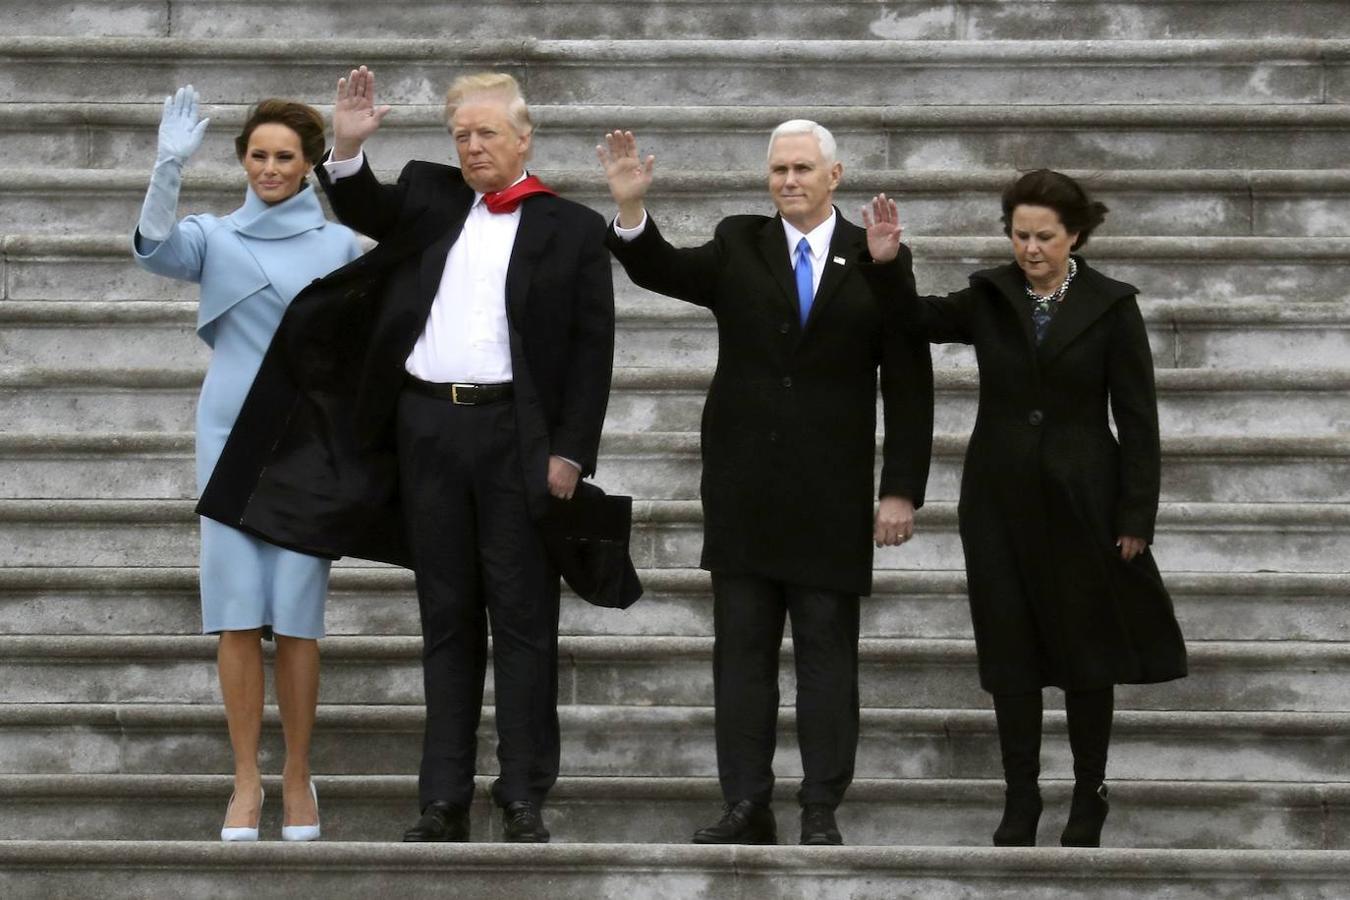 Toma de posesión de Donald Trump en enero de 2017. A su derecha Melania, la primera dama. A su izquierda, Mike y Karen Pence